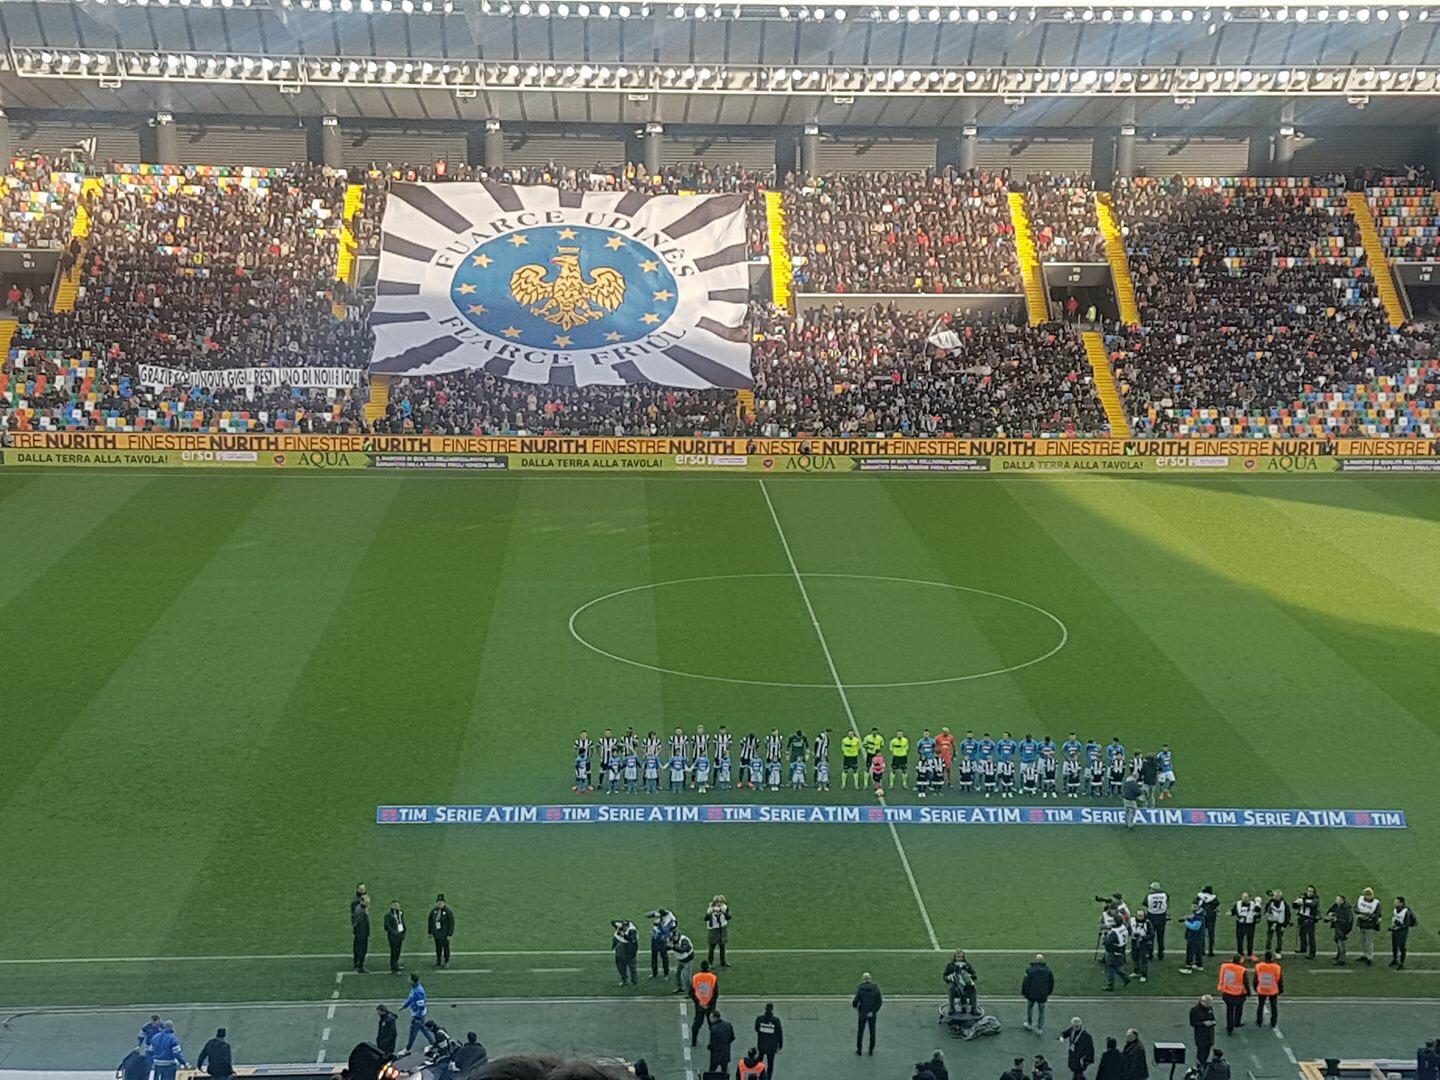 Minimo sforzo massimo risultato: a Udine termina 1-0 per il Napoli